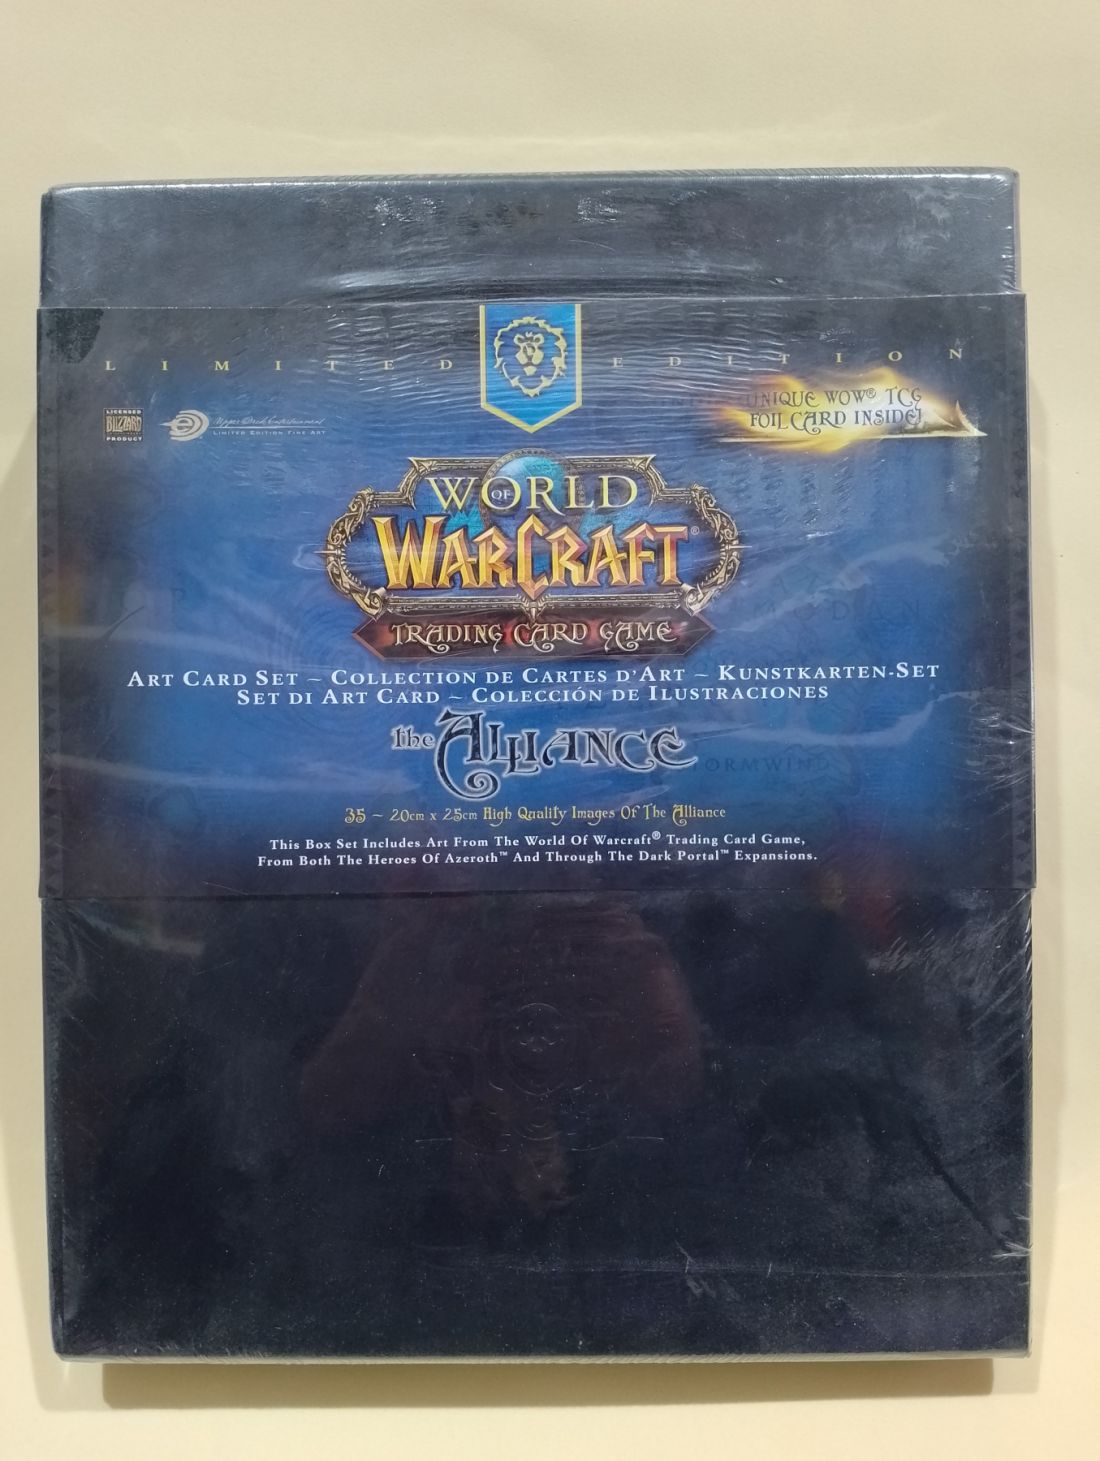 Deluxe art box world of Warcraft edición limitada con carta única